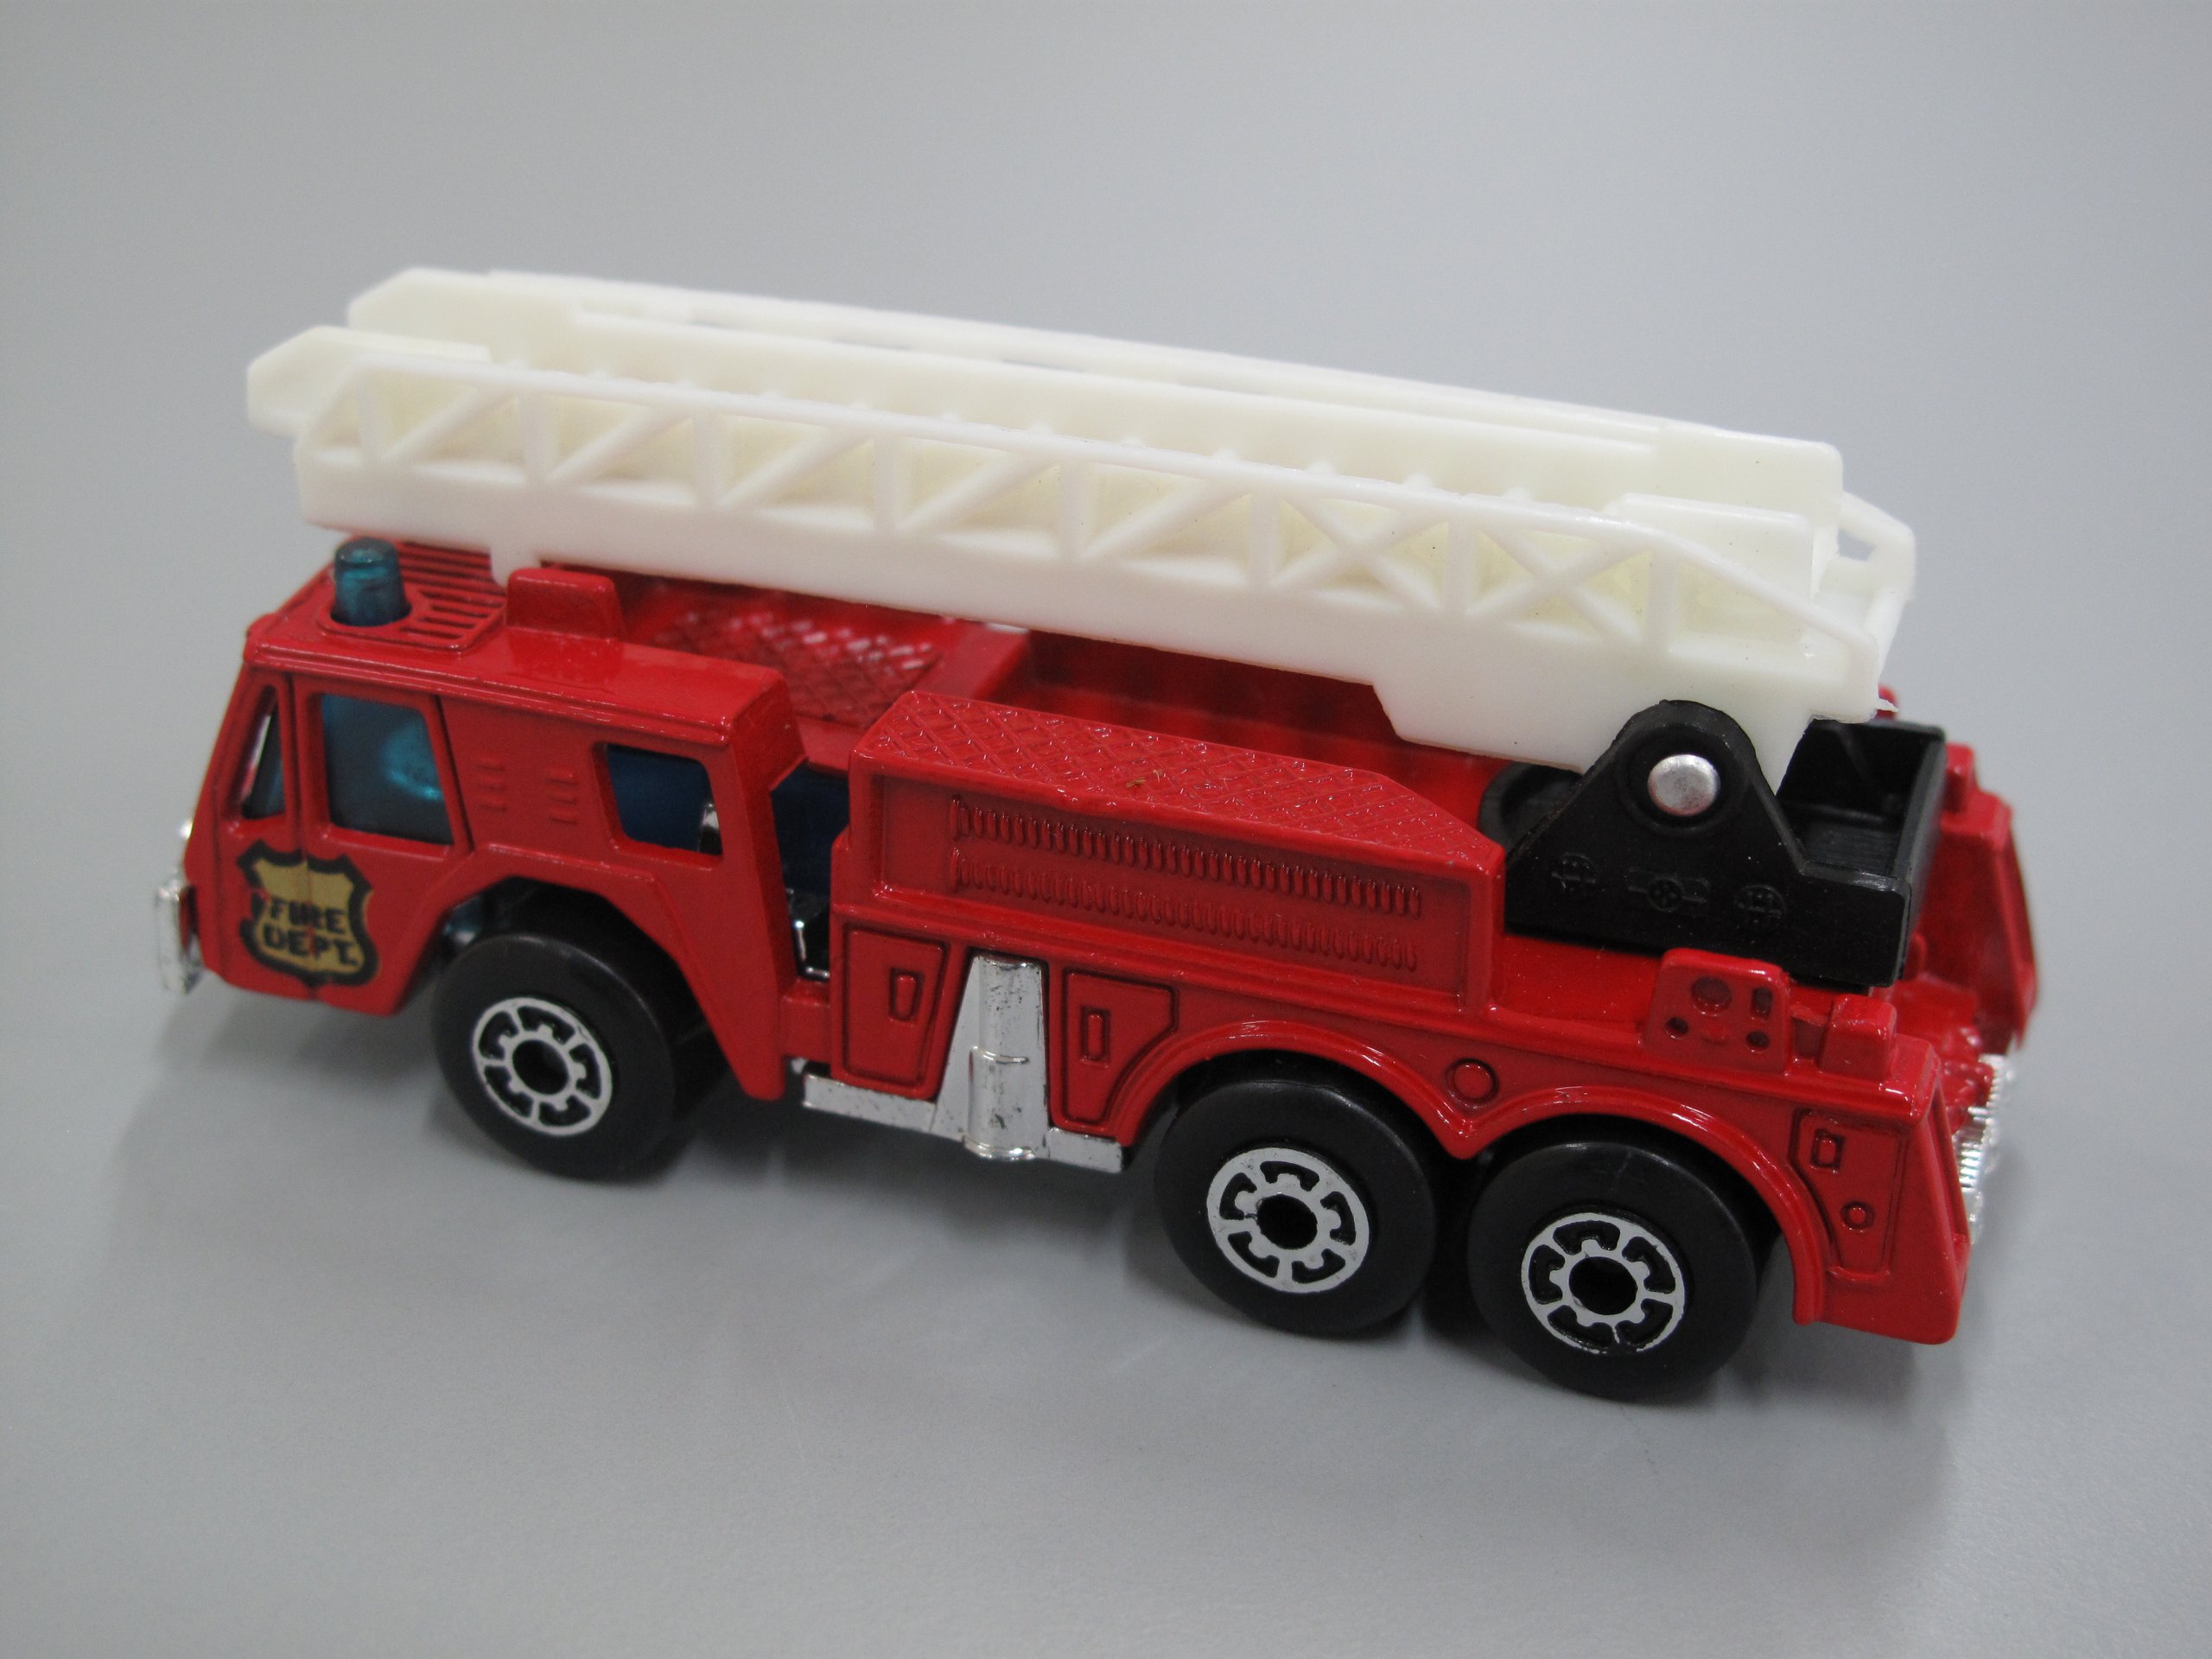 Matchbox fire engine 'Fire Dept'